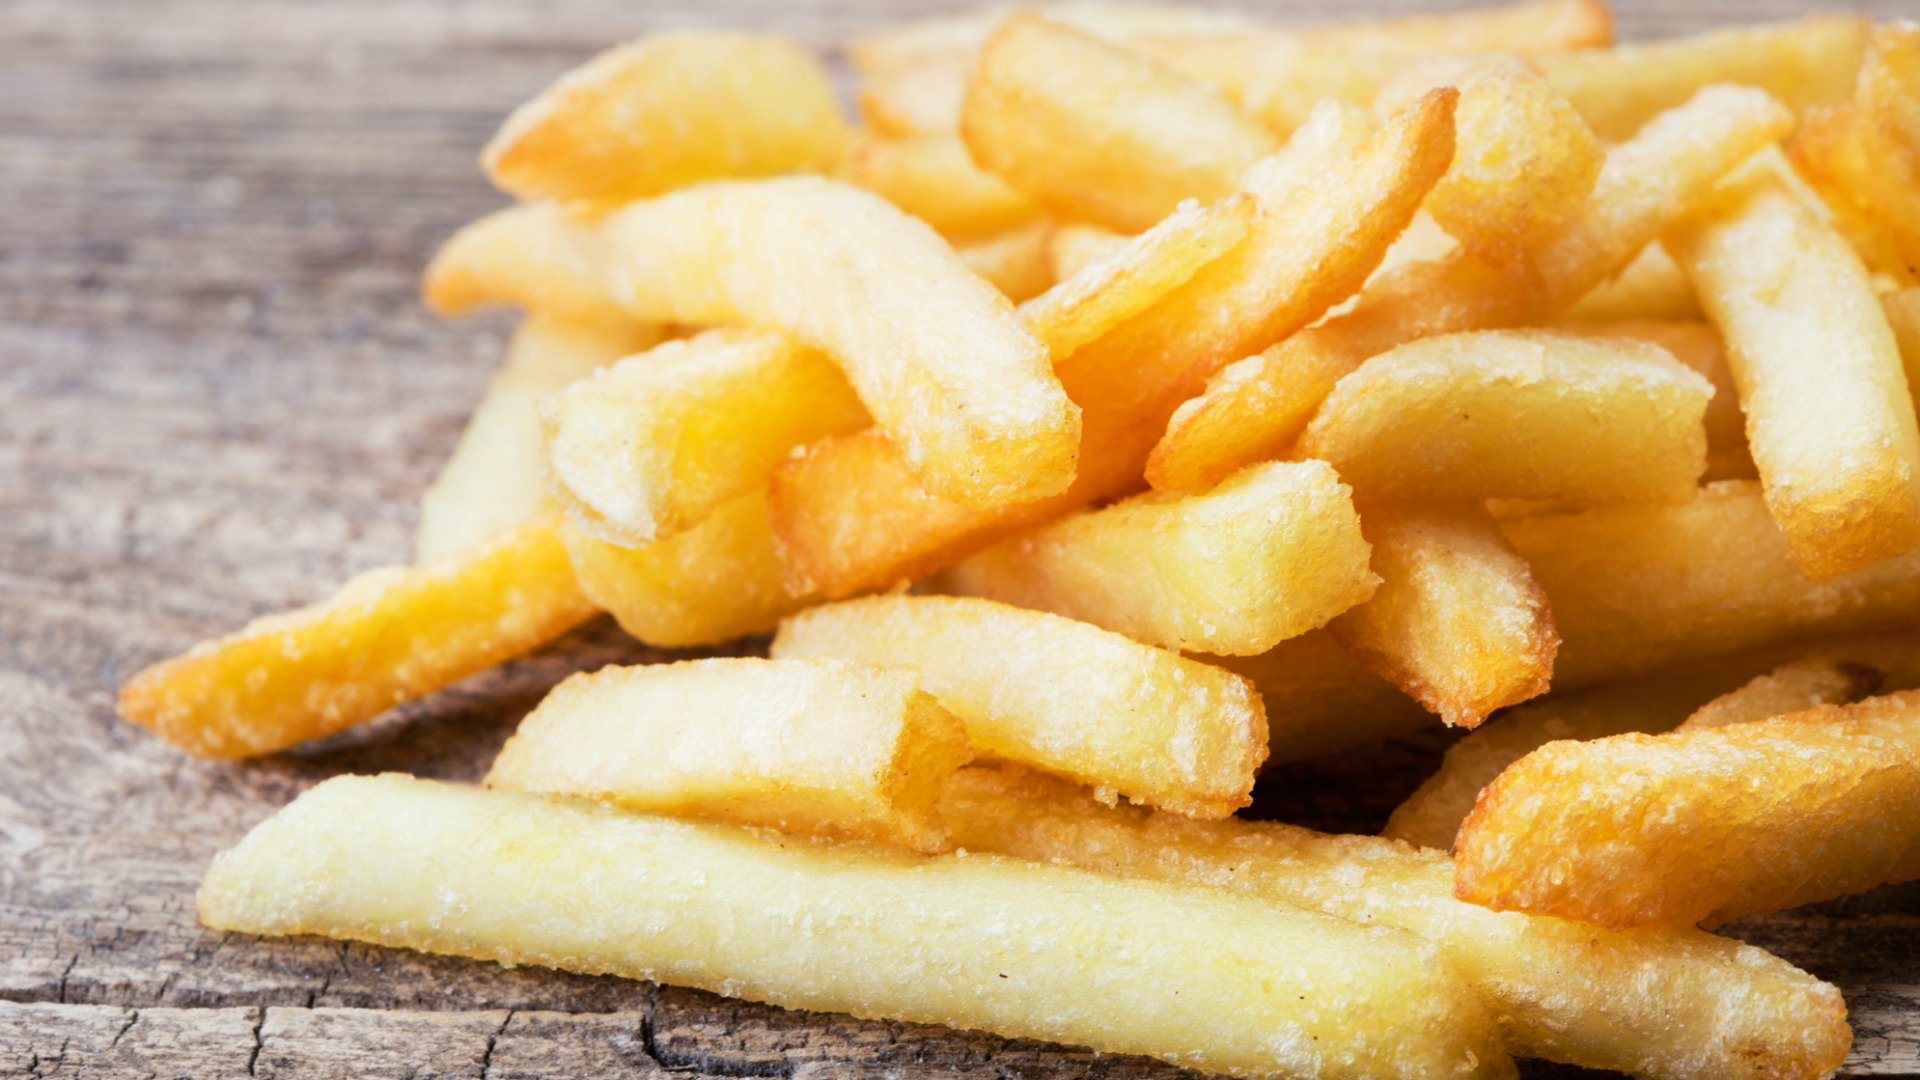 Las papas fritas son uno de los alimentos más difíciles de recalentar